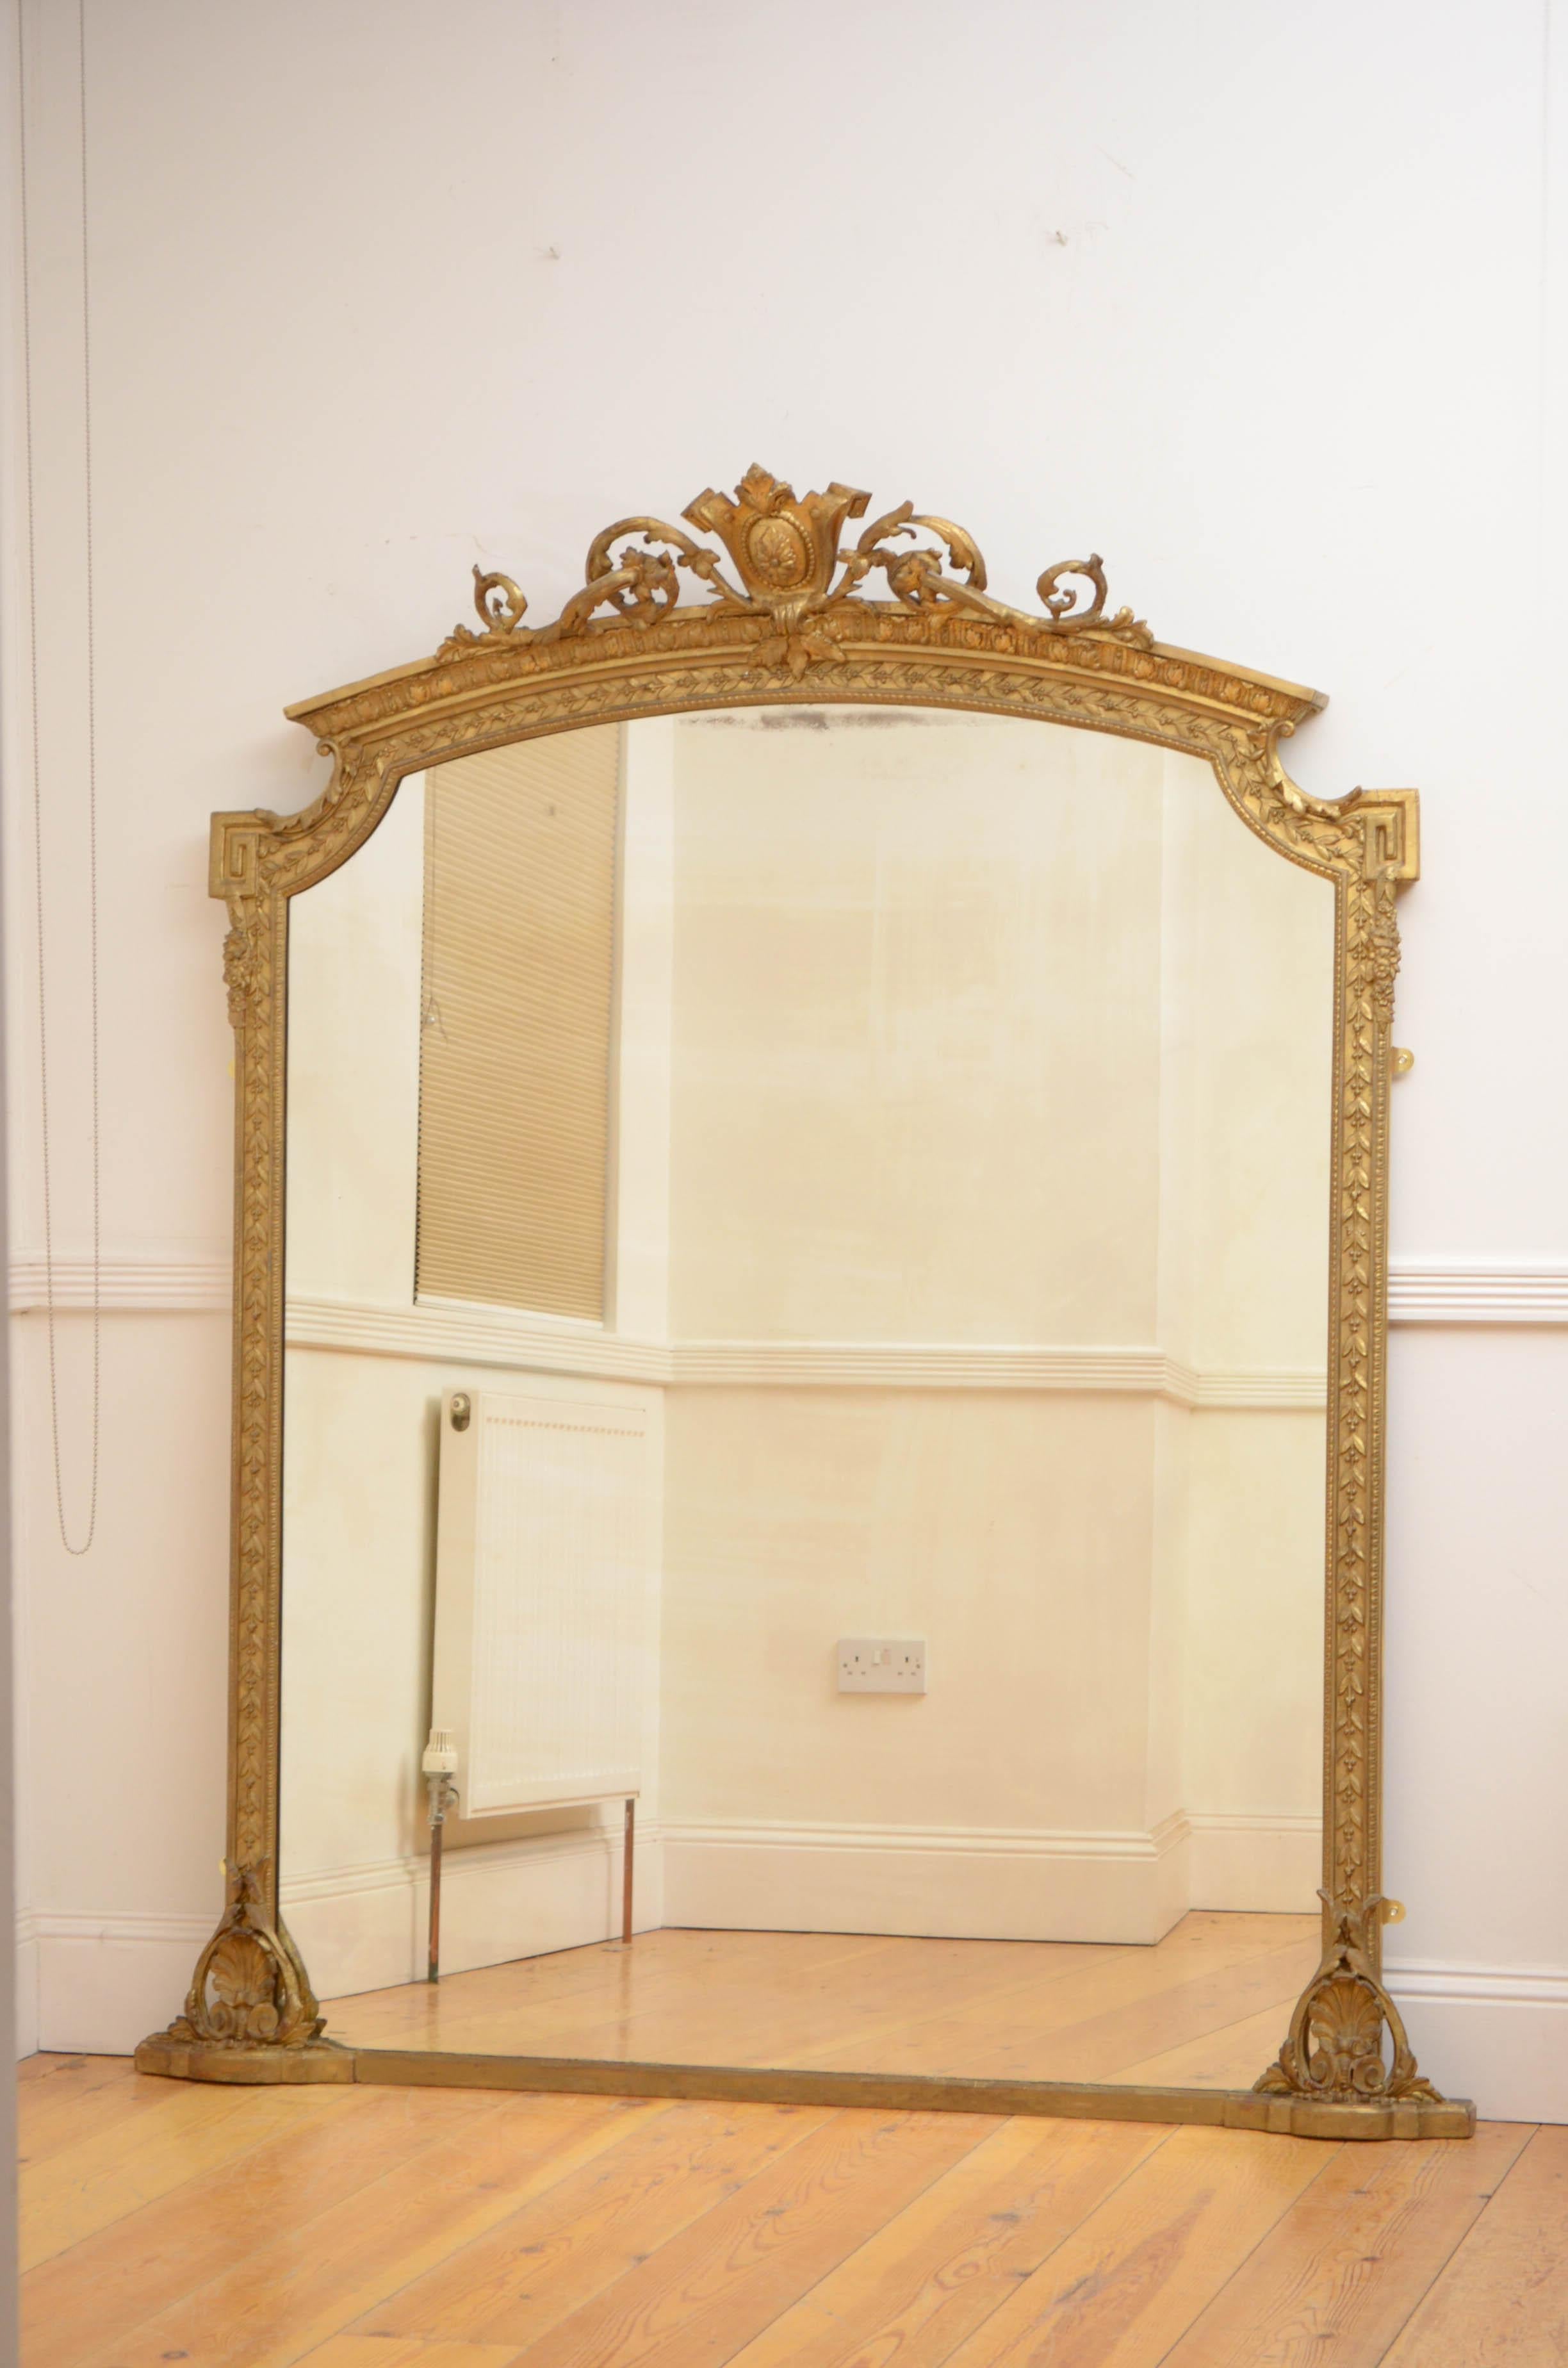 Sn5164 Superbe miroir mural doré du début de l'époque victorienne, ayant un verre d'origine avec quelques rousseurs et imprécations dans un cadre en bois doré décoré de laurier avec des volutes de coquilles à la base et une crête de feuillage. Ce